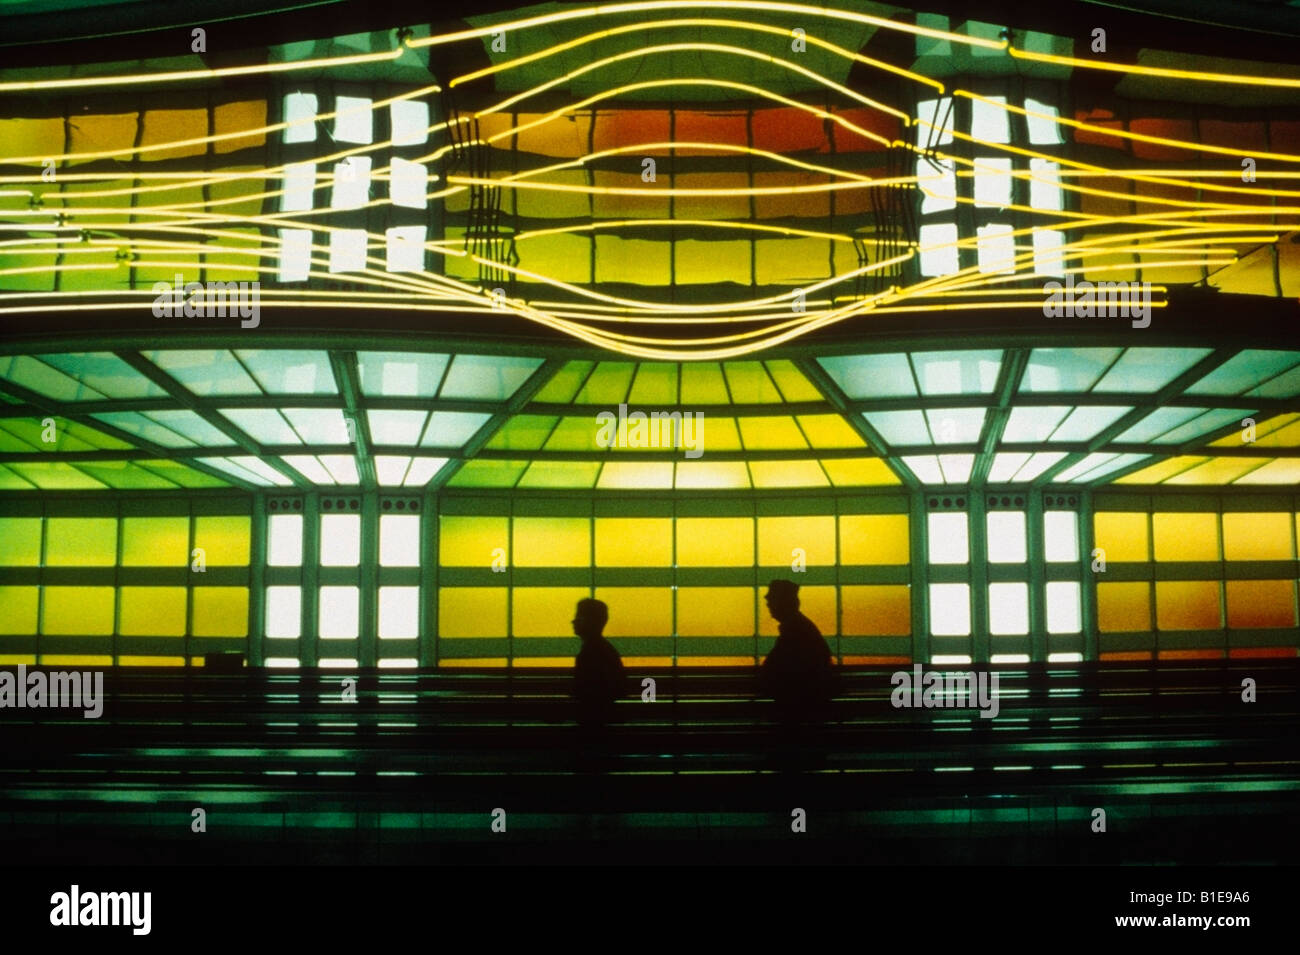 Hinterleuchtete Menschen auf Laufband in Neon beleuchteten Flur Ohare Airport Chicago Illinois USA Stockfoto